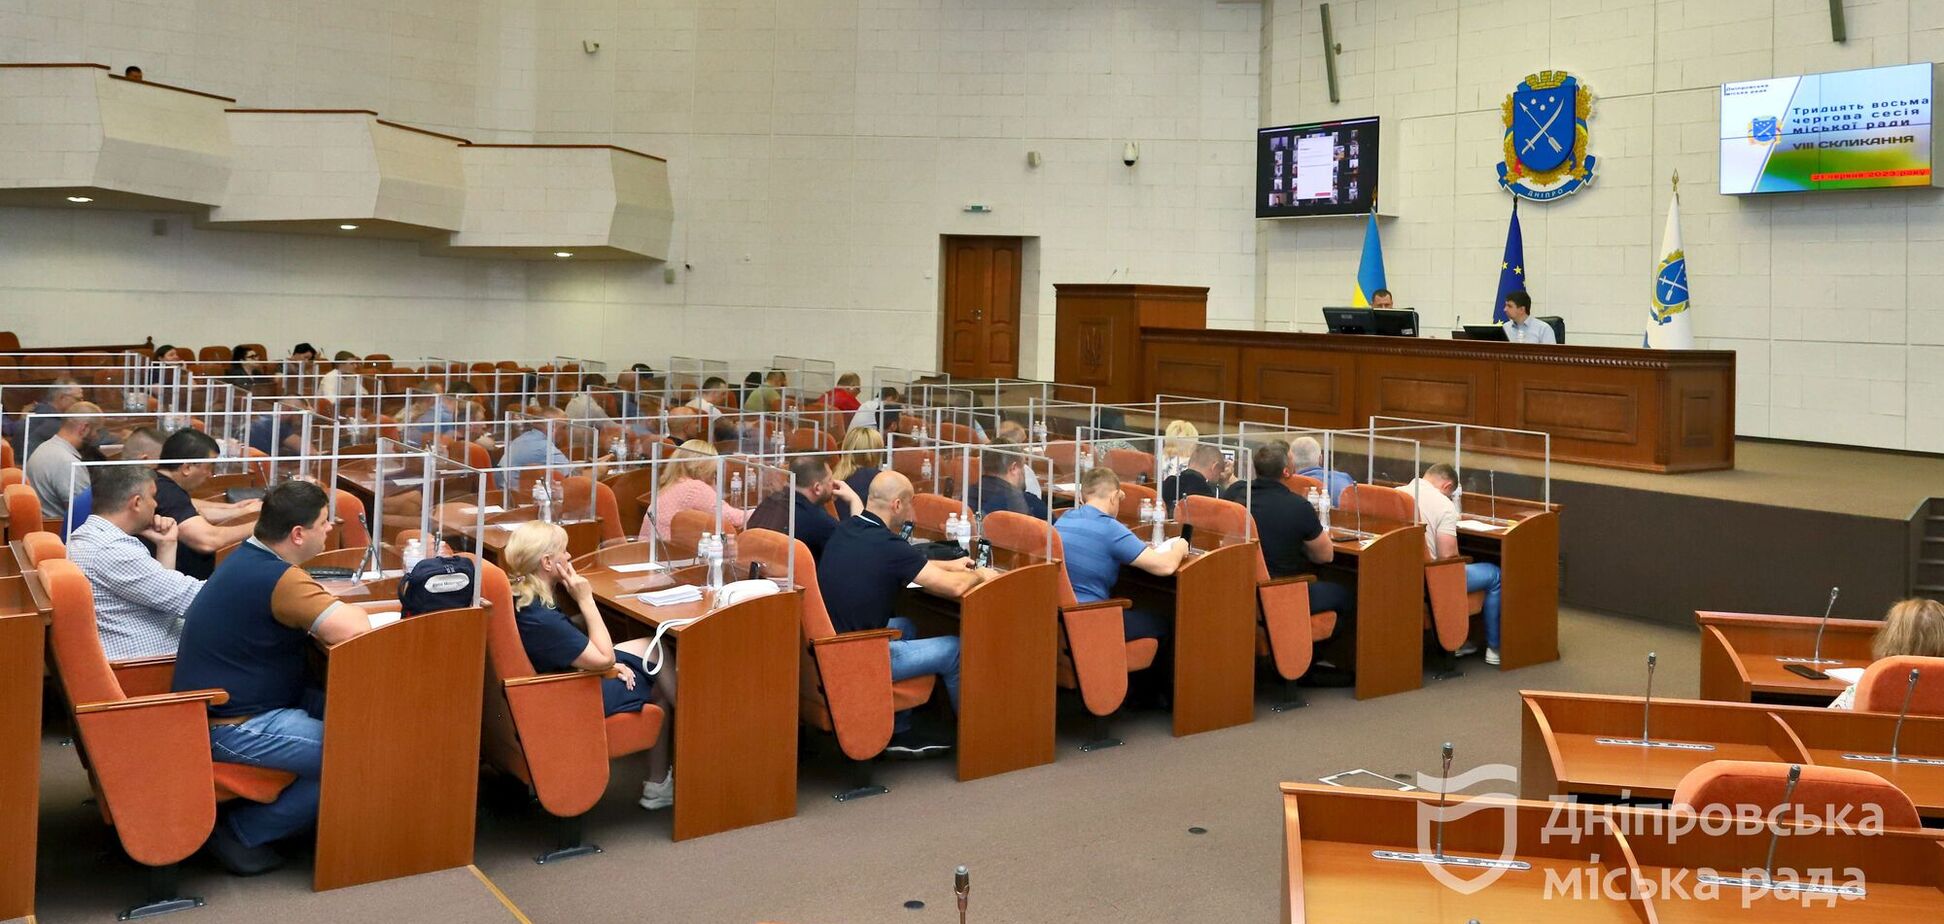 Риженко, який заявив про спробу захоплення лікарні Мечникова, не підтримав ініціативу про передачу справи правоохоронцям